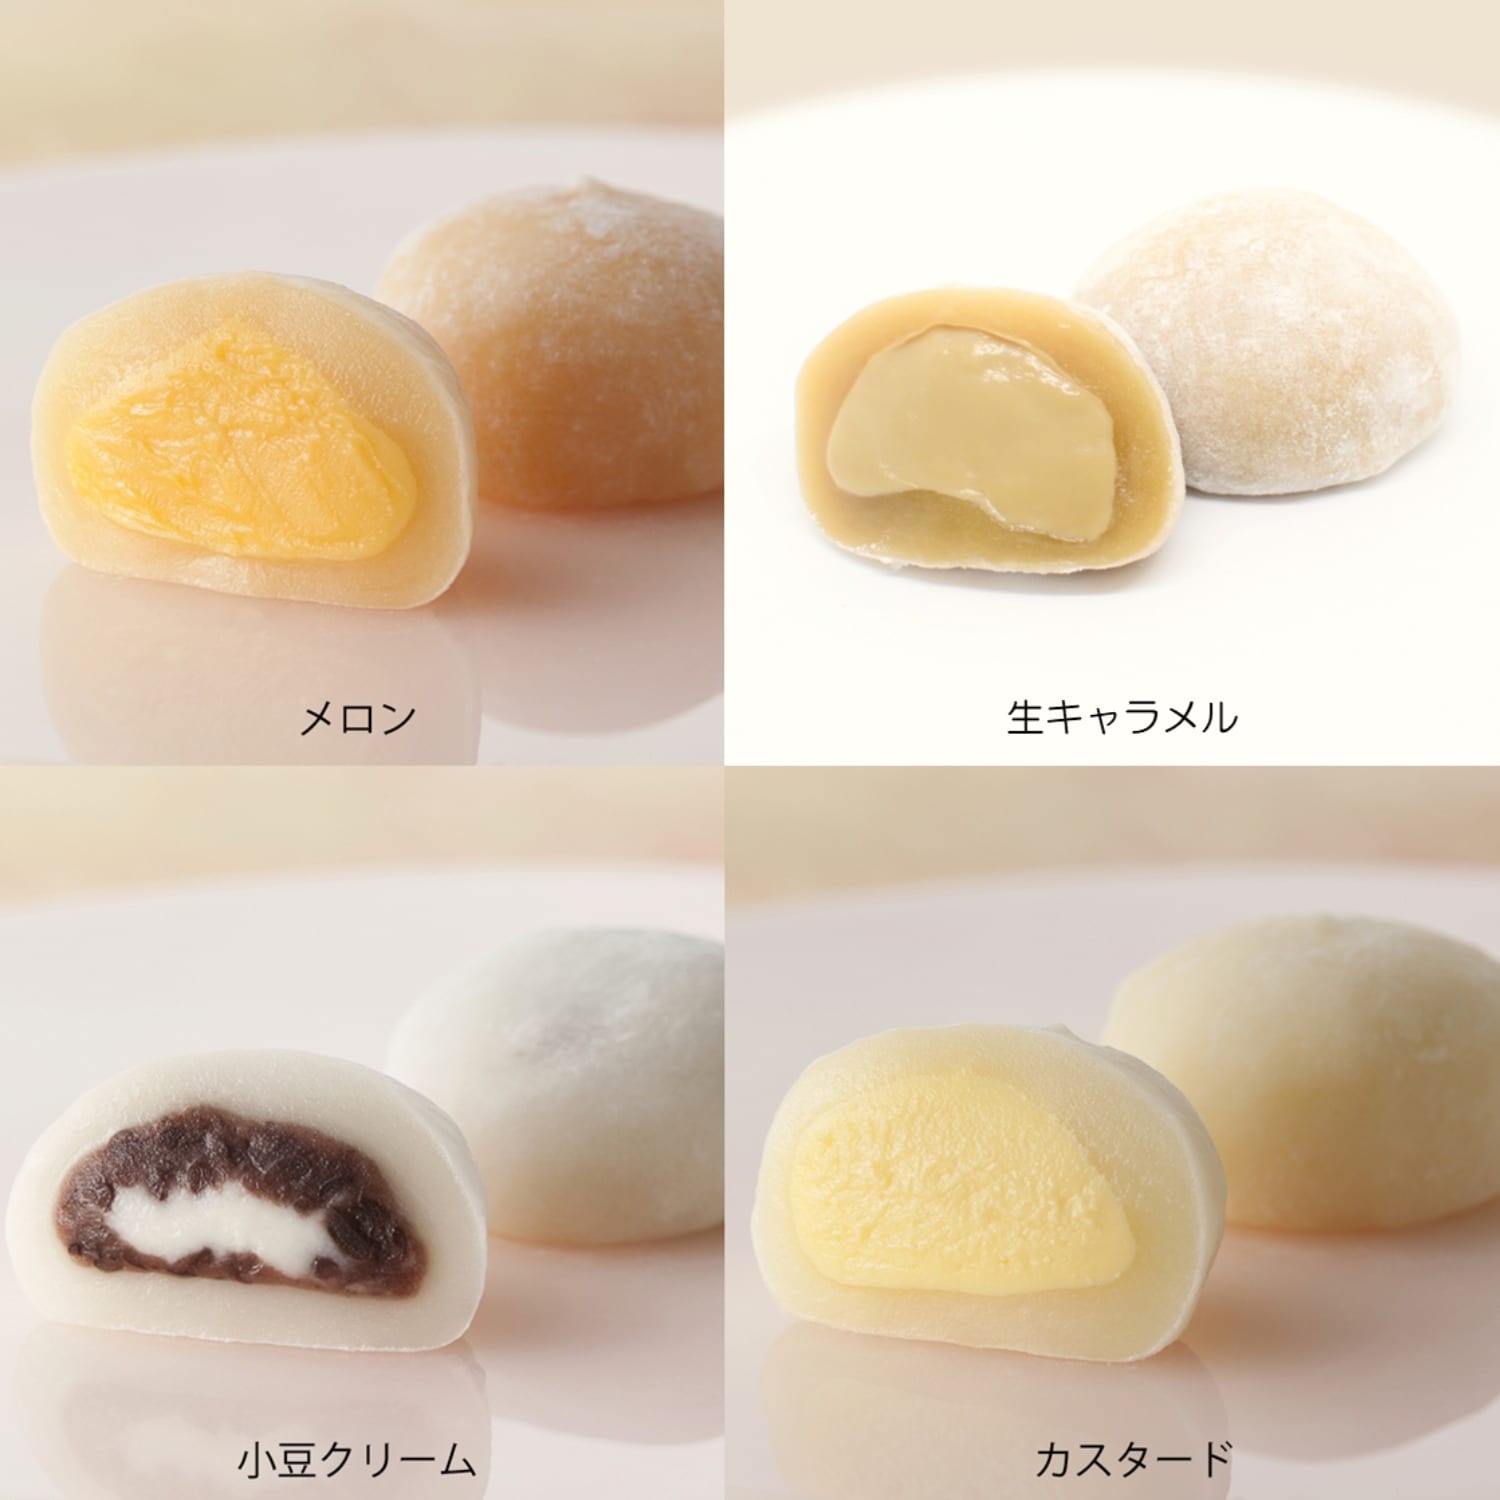 【北の麩本舗】4つの味わい 北海道ふわふわ大福セット4種 16個画像